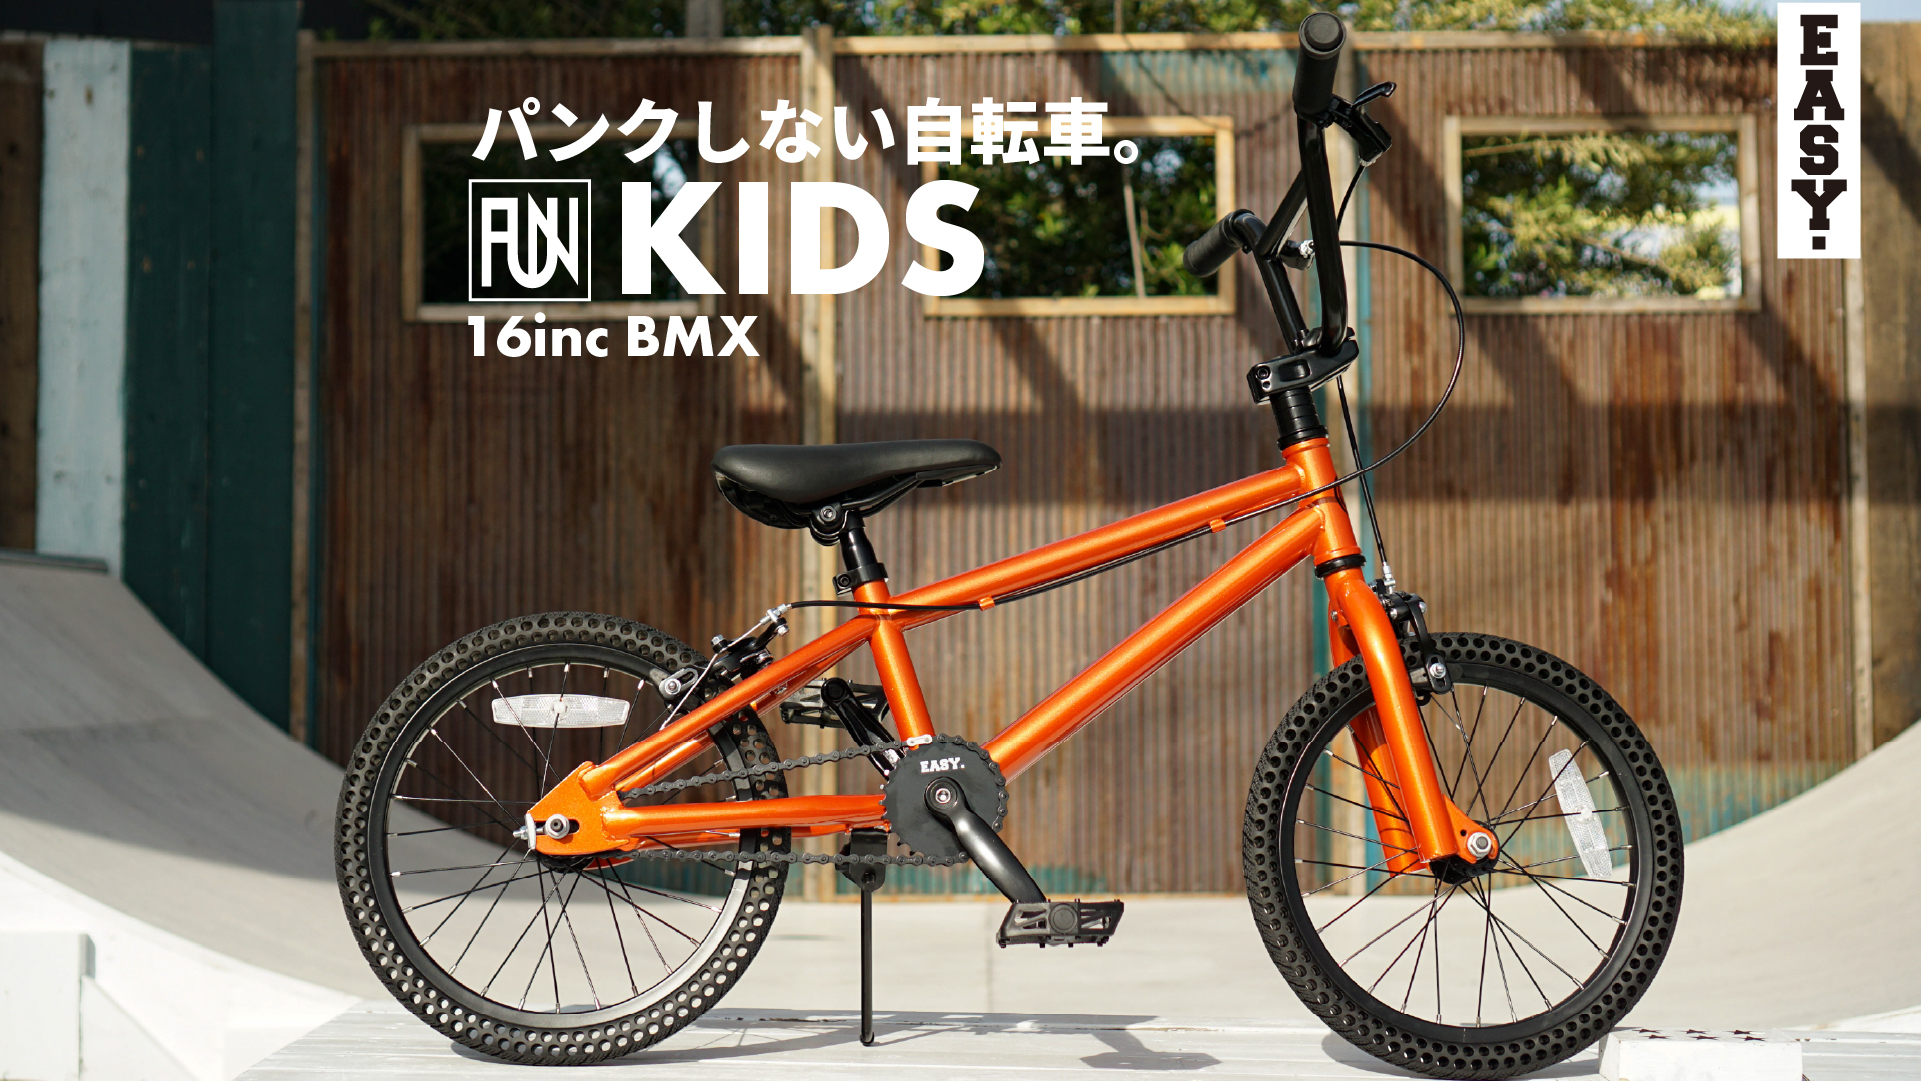 パンクしない自転車 FUN EASY KIDS BMX 16インチ キャンディーオレンジ